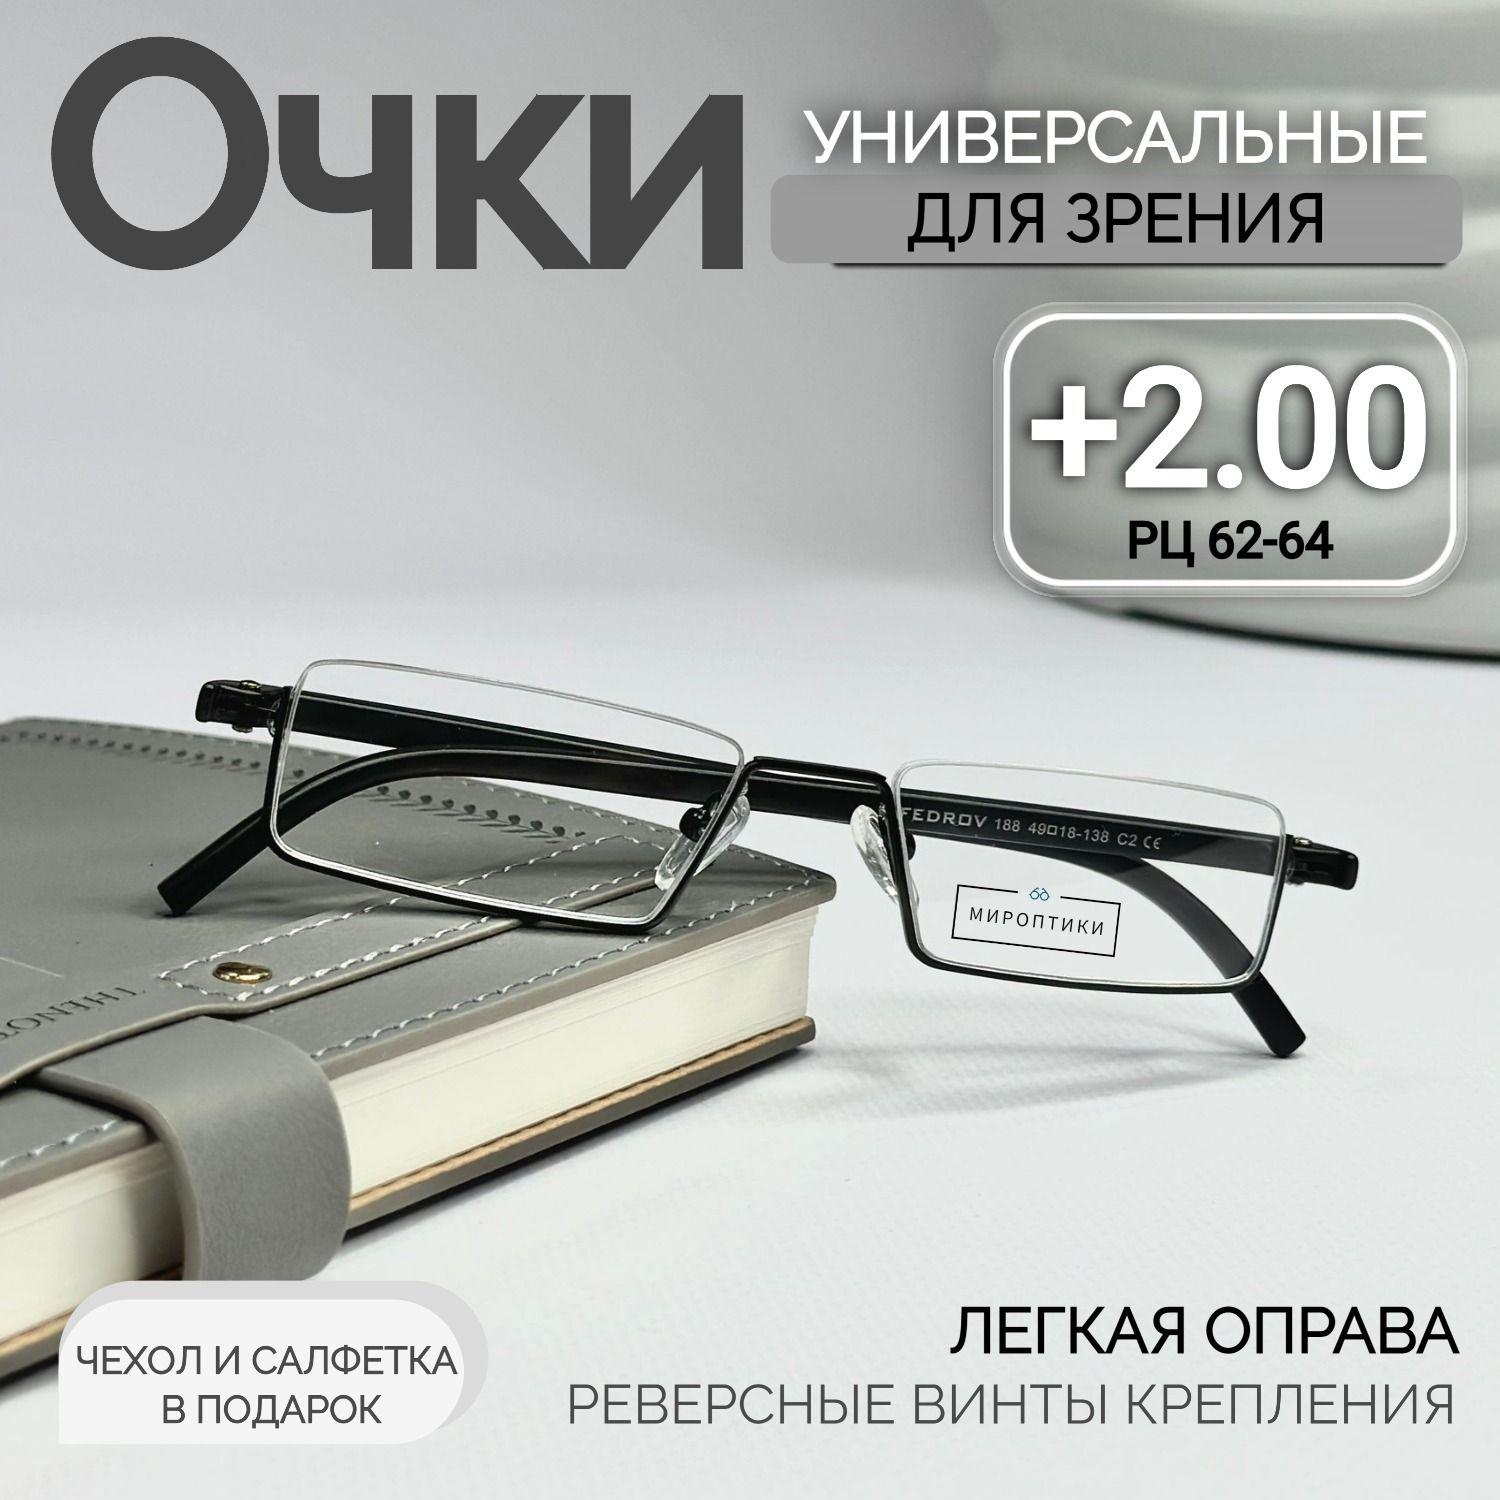 Fedrov | Готовые очки для зрения Fedrov 188 C2 противоударные для чтения с диоптриями +2.00 (чехол в подарок)